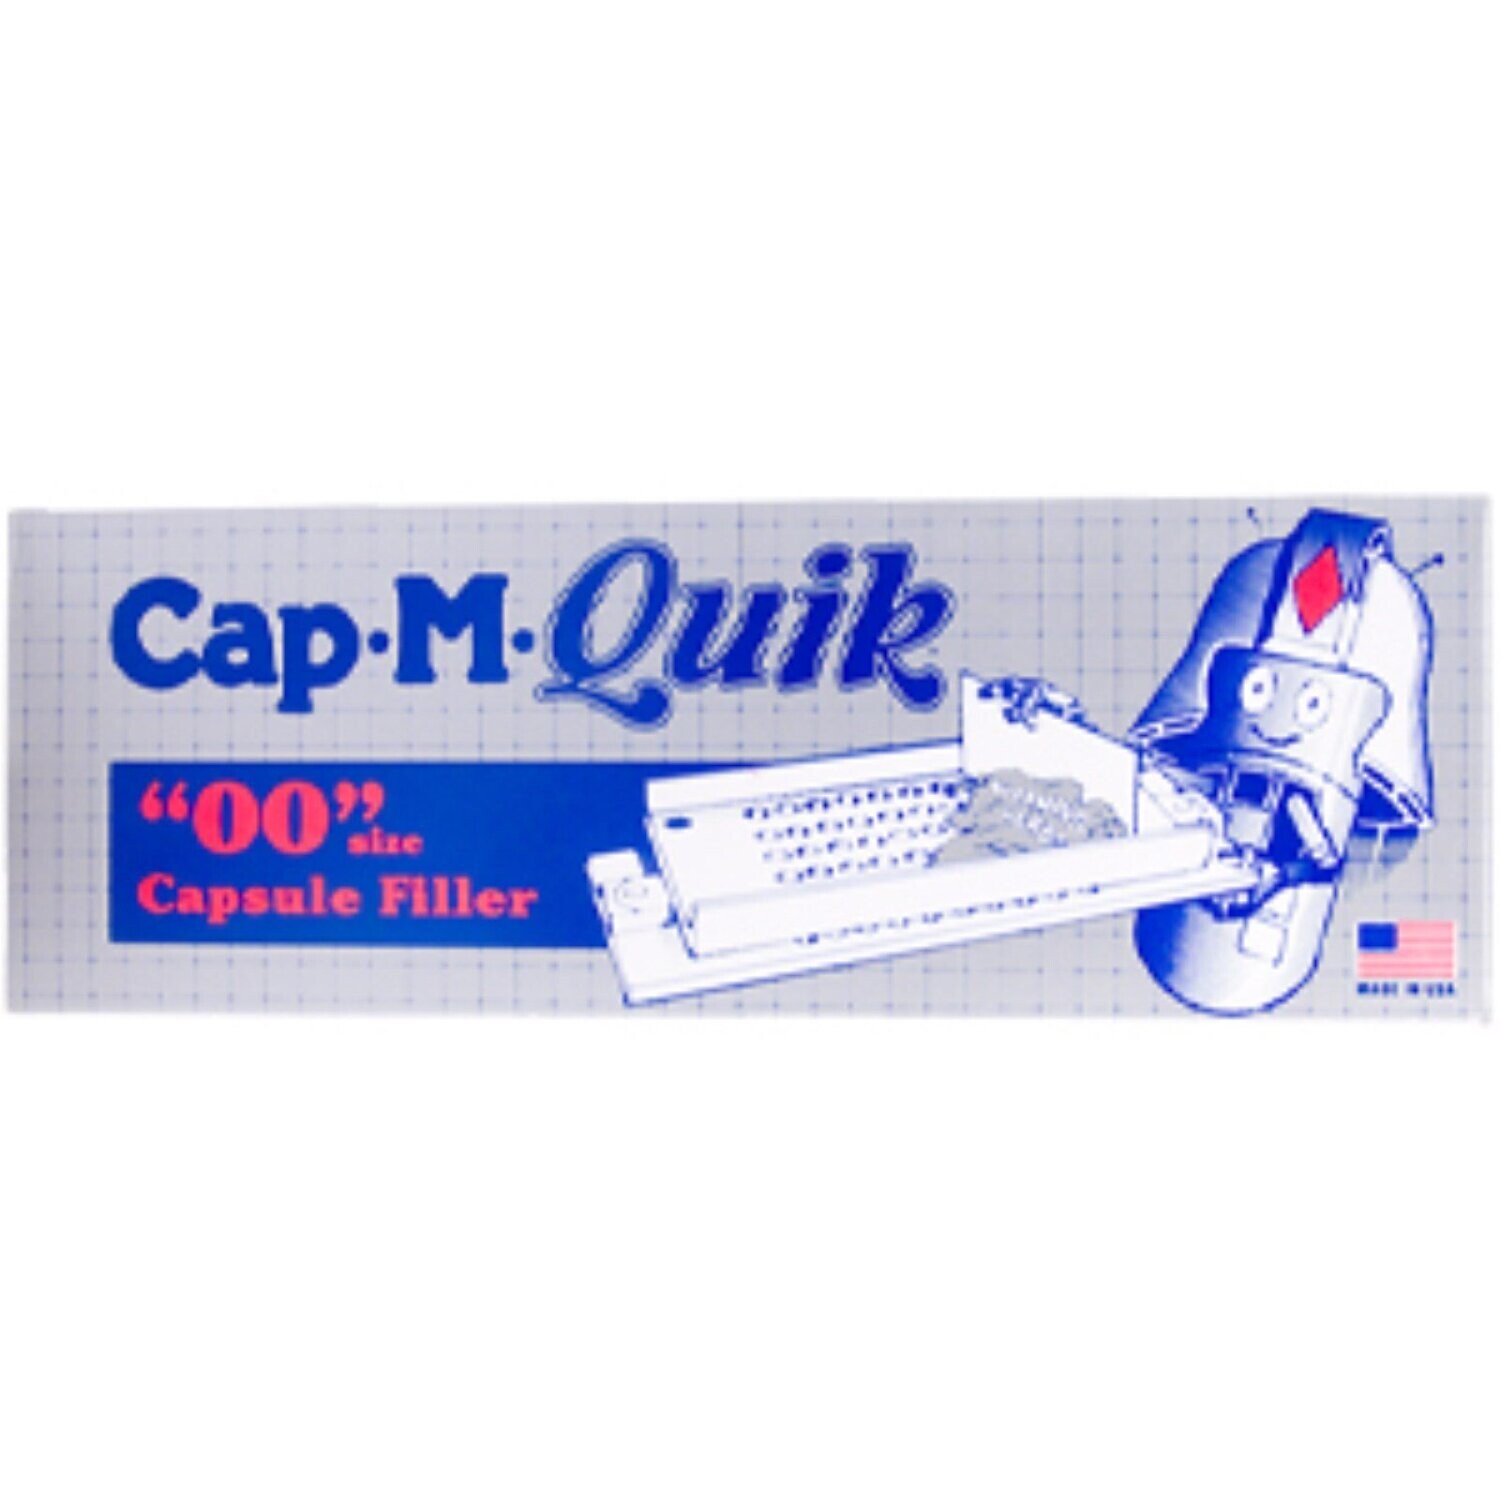 Cap M  Quick  Capsule Filler (For 00 size)